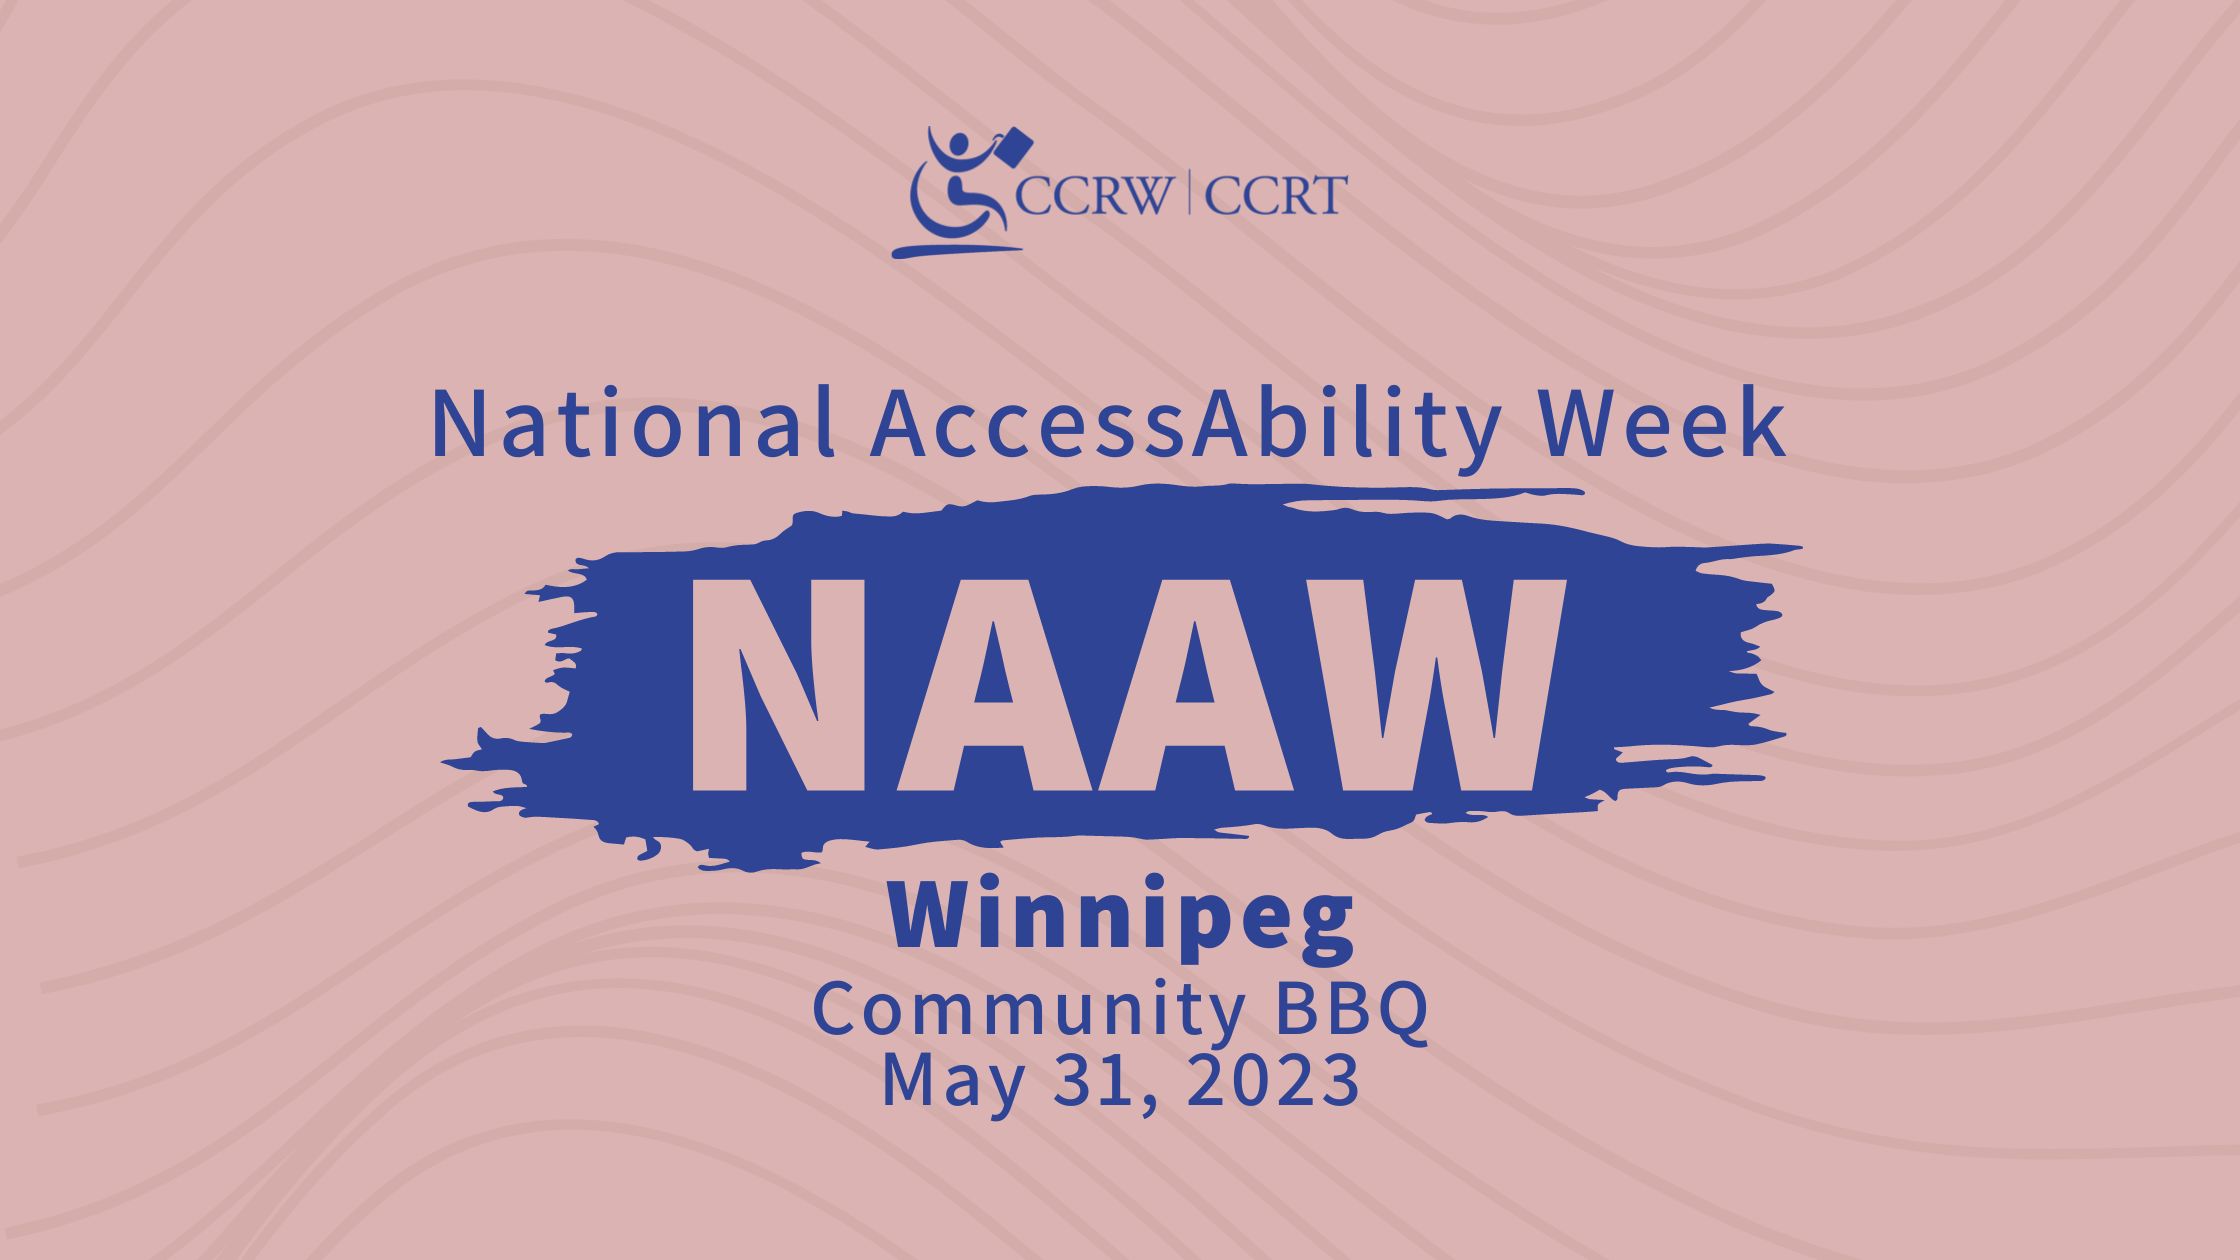 NAAW 2023 – Winnipeg: Community BBQ